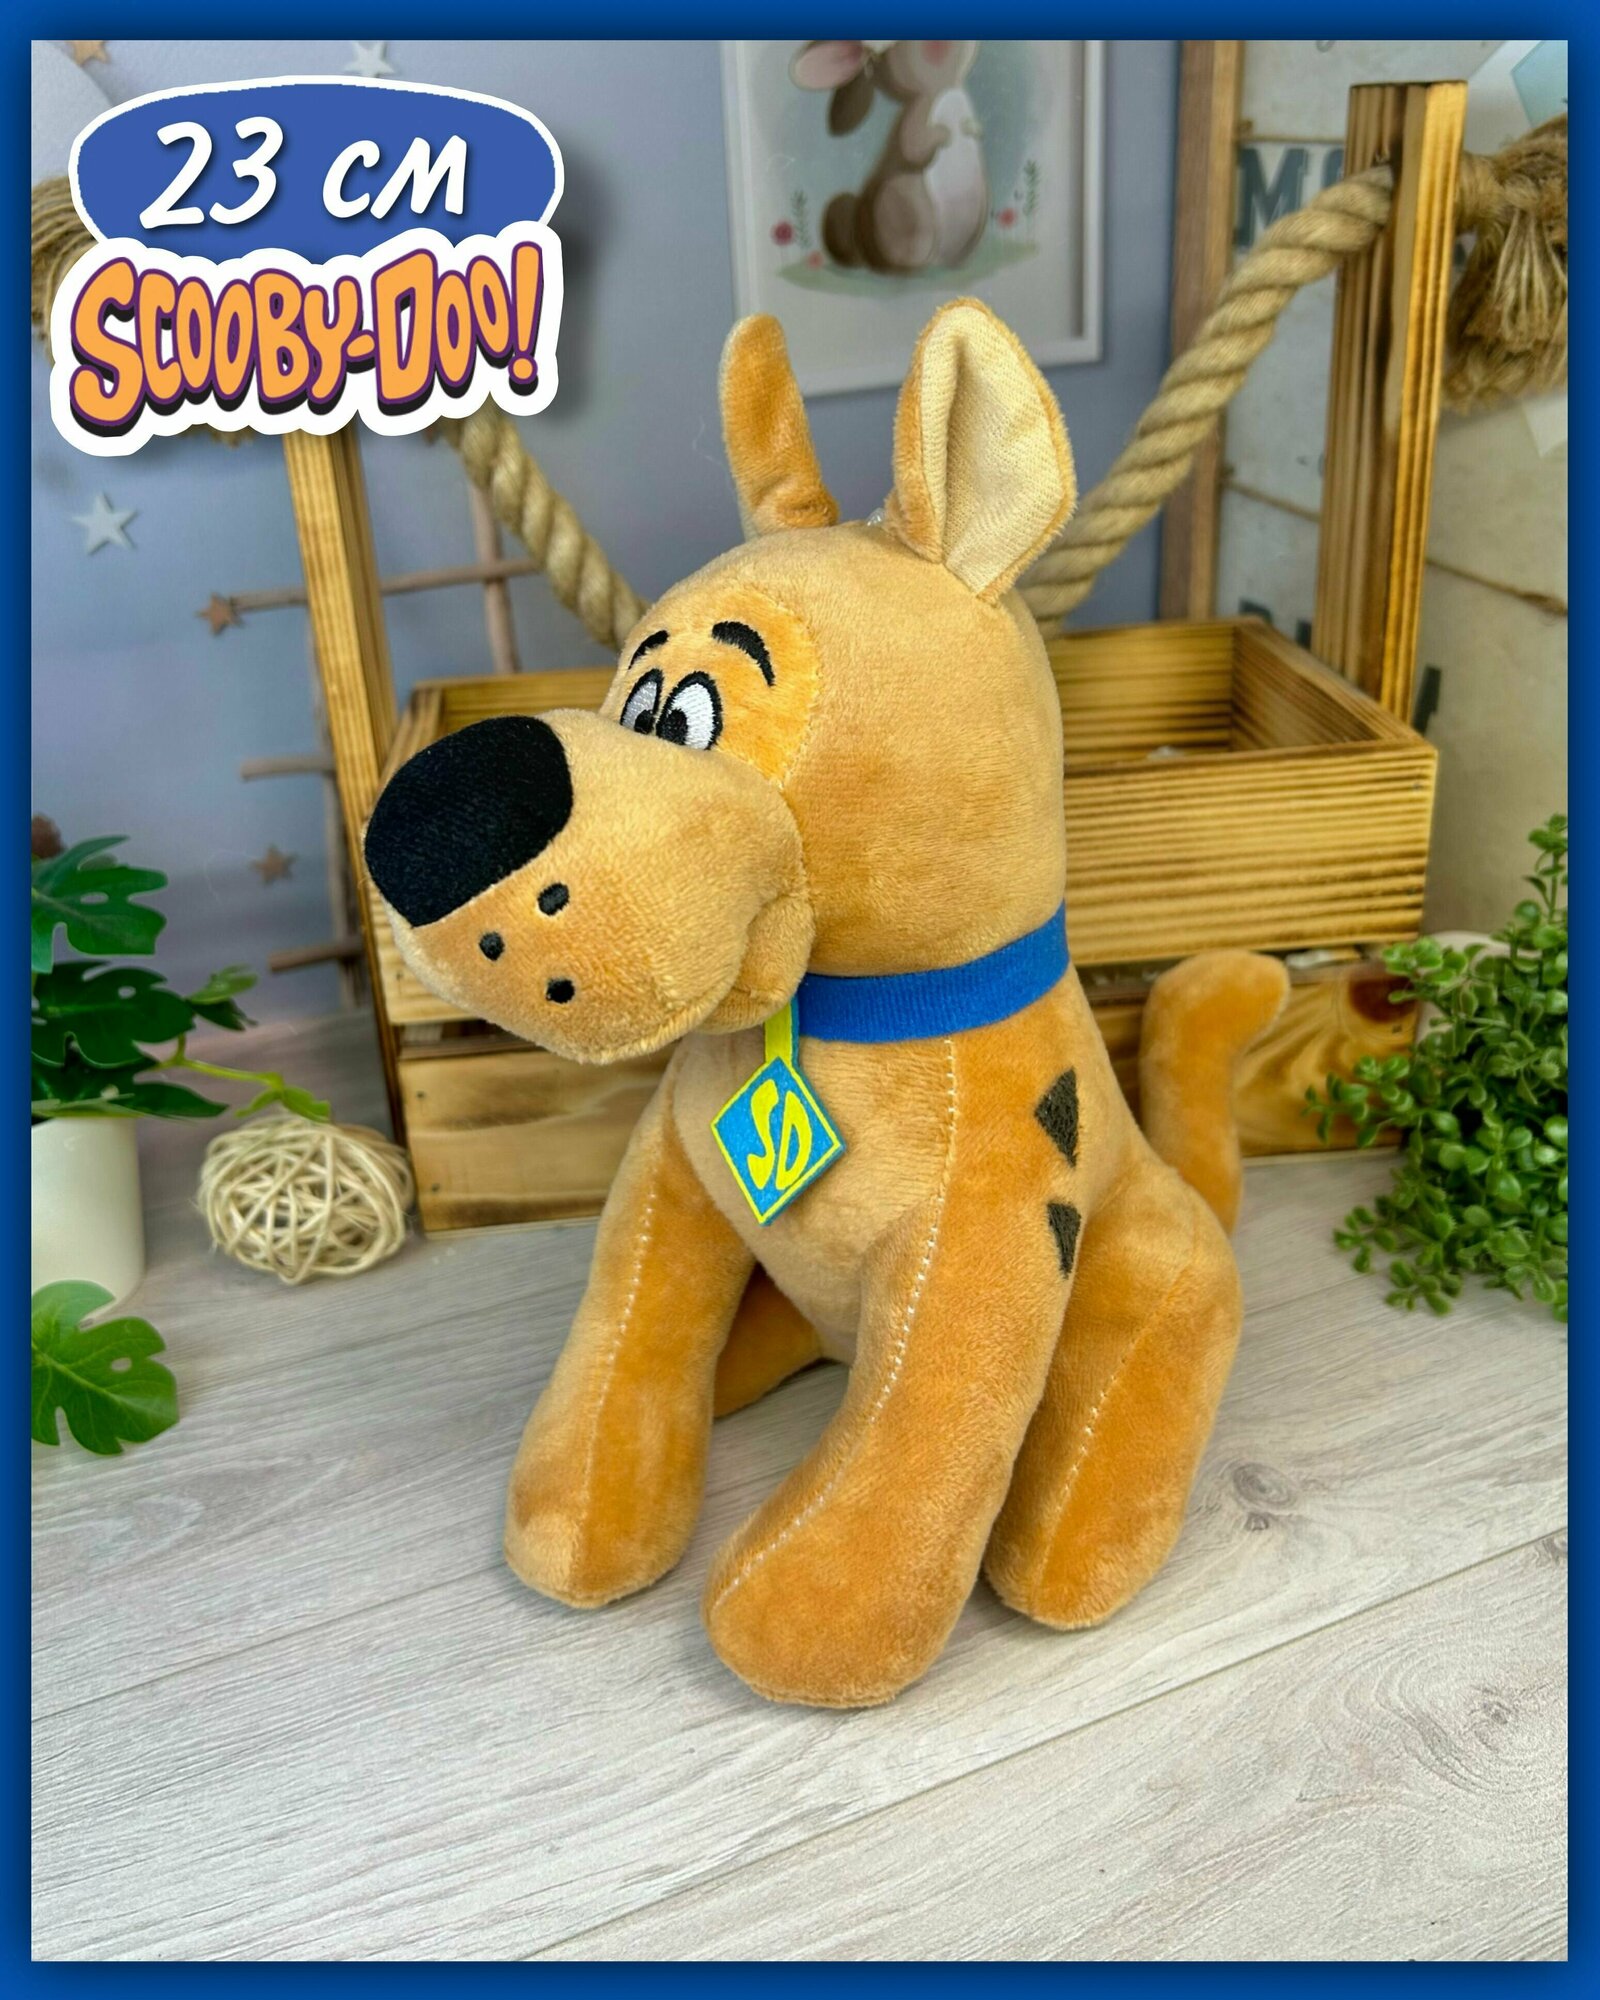 Мягкая игрушка "Пёсик Скуби-Ду" (Scooby Doo) 23 см - плюшевая собака